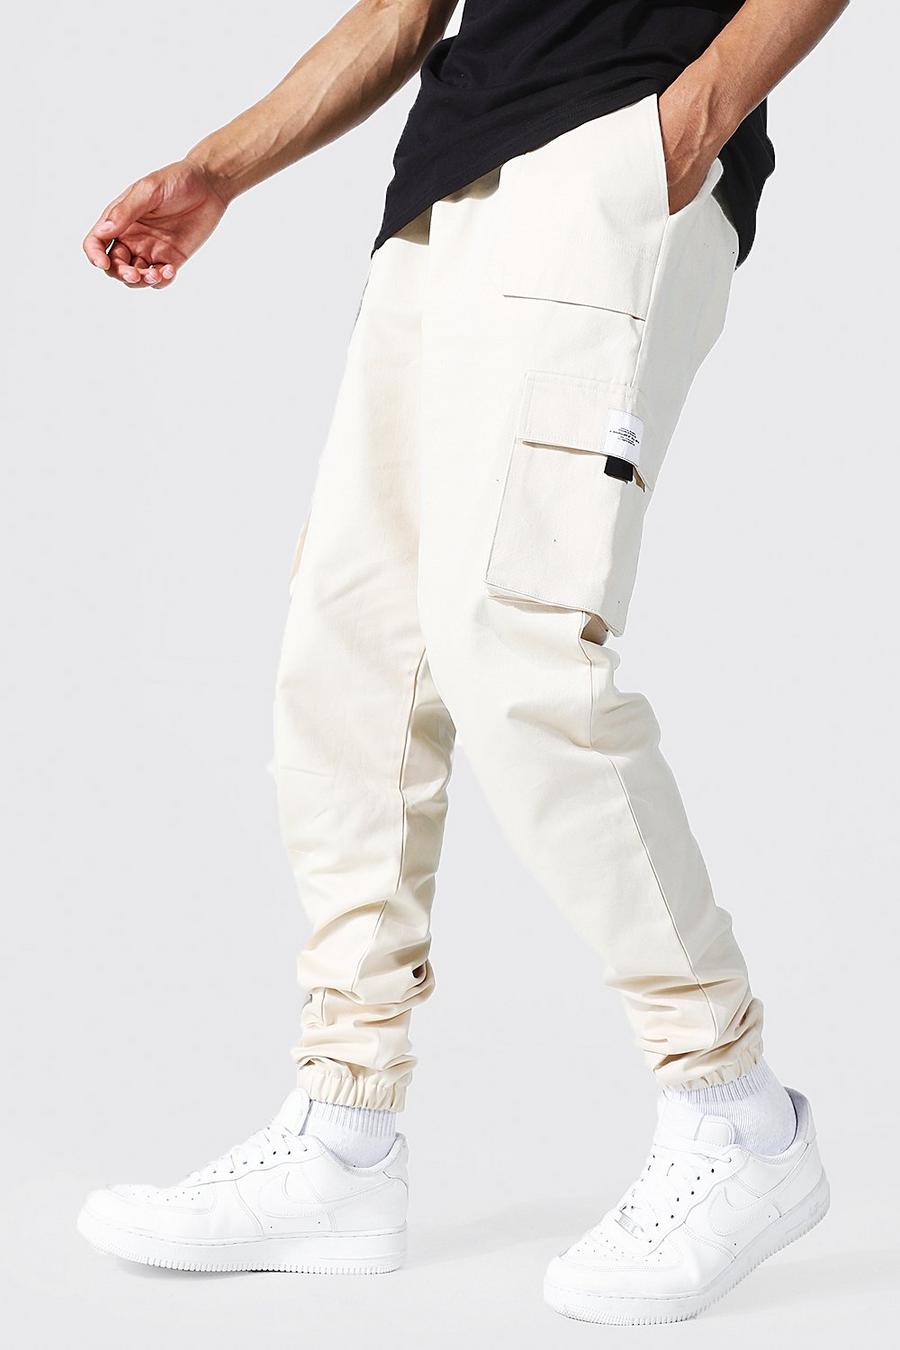 שמנת white מכנסי ריצה טוויל דגמ"ח עם חגורה בחזית ותווית לגברים גבוהים image number 1